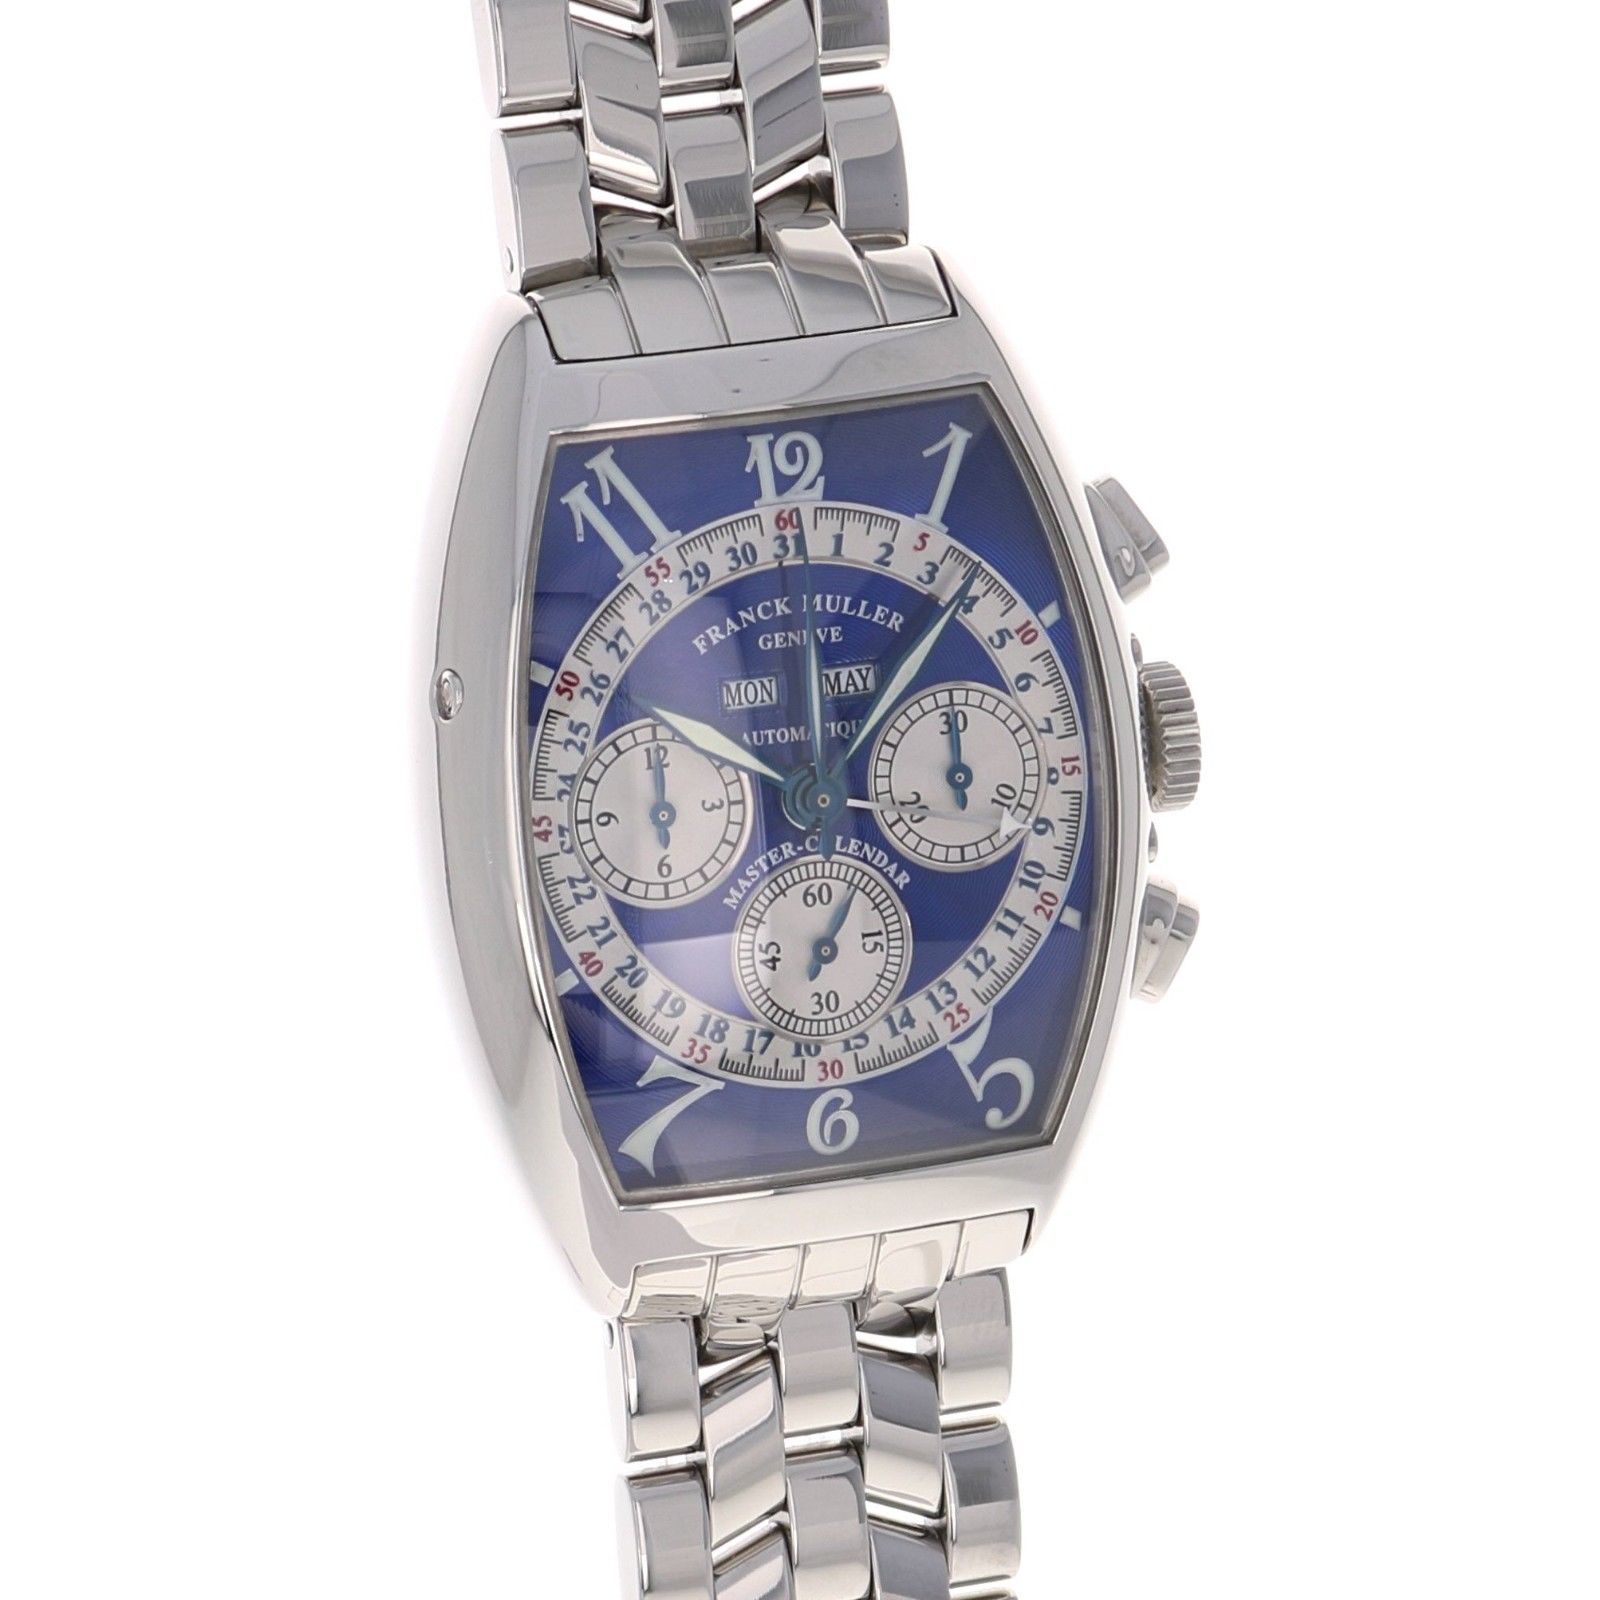 Frank Muller : 5 montres les plus belles et chères sur eBay ! 